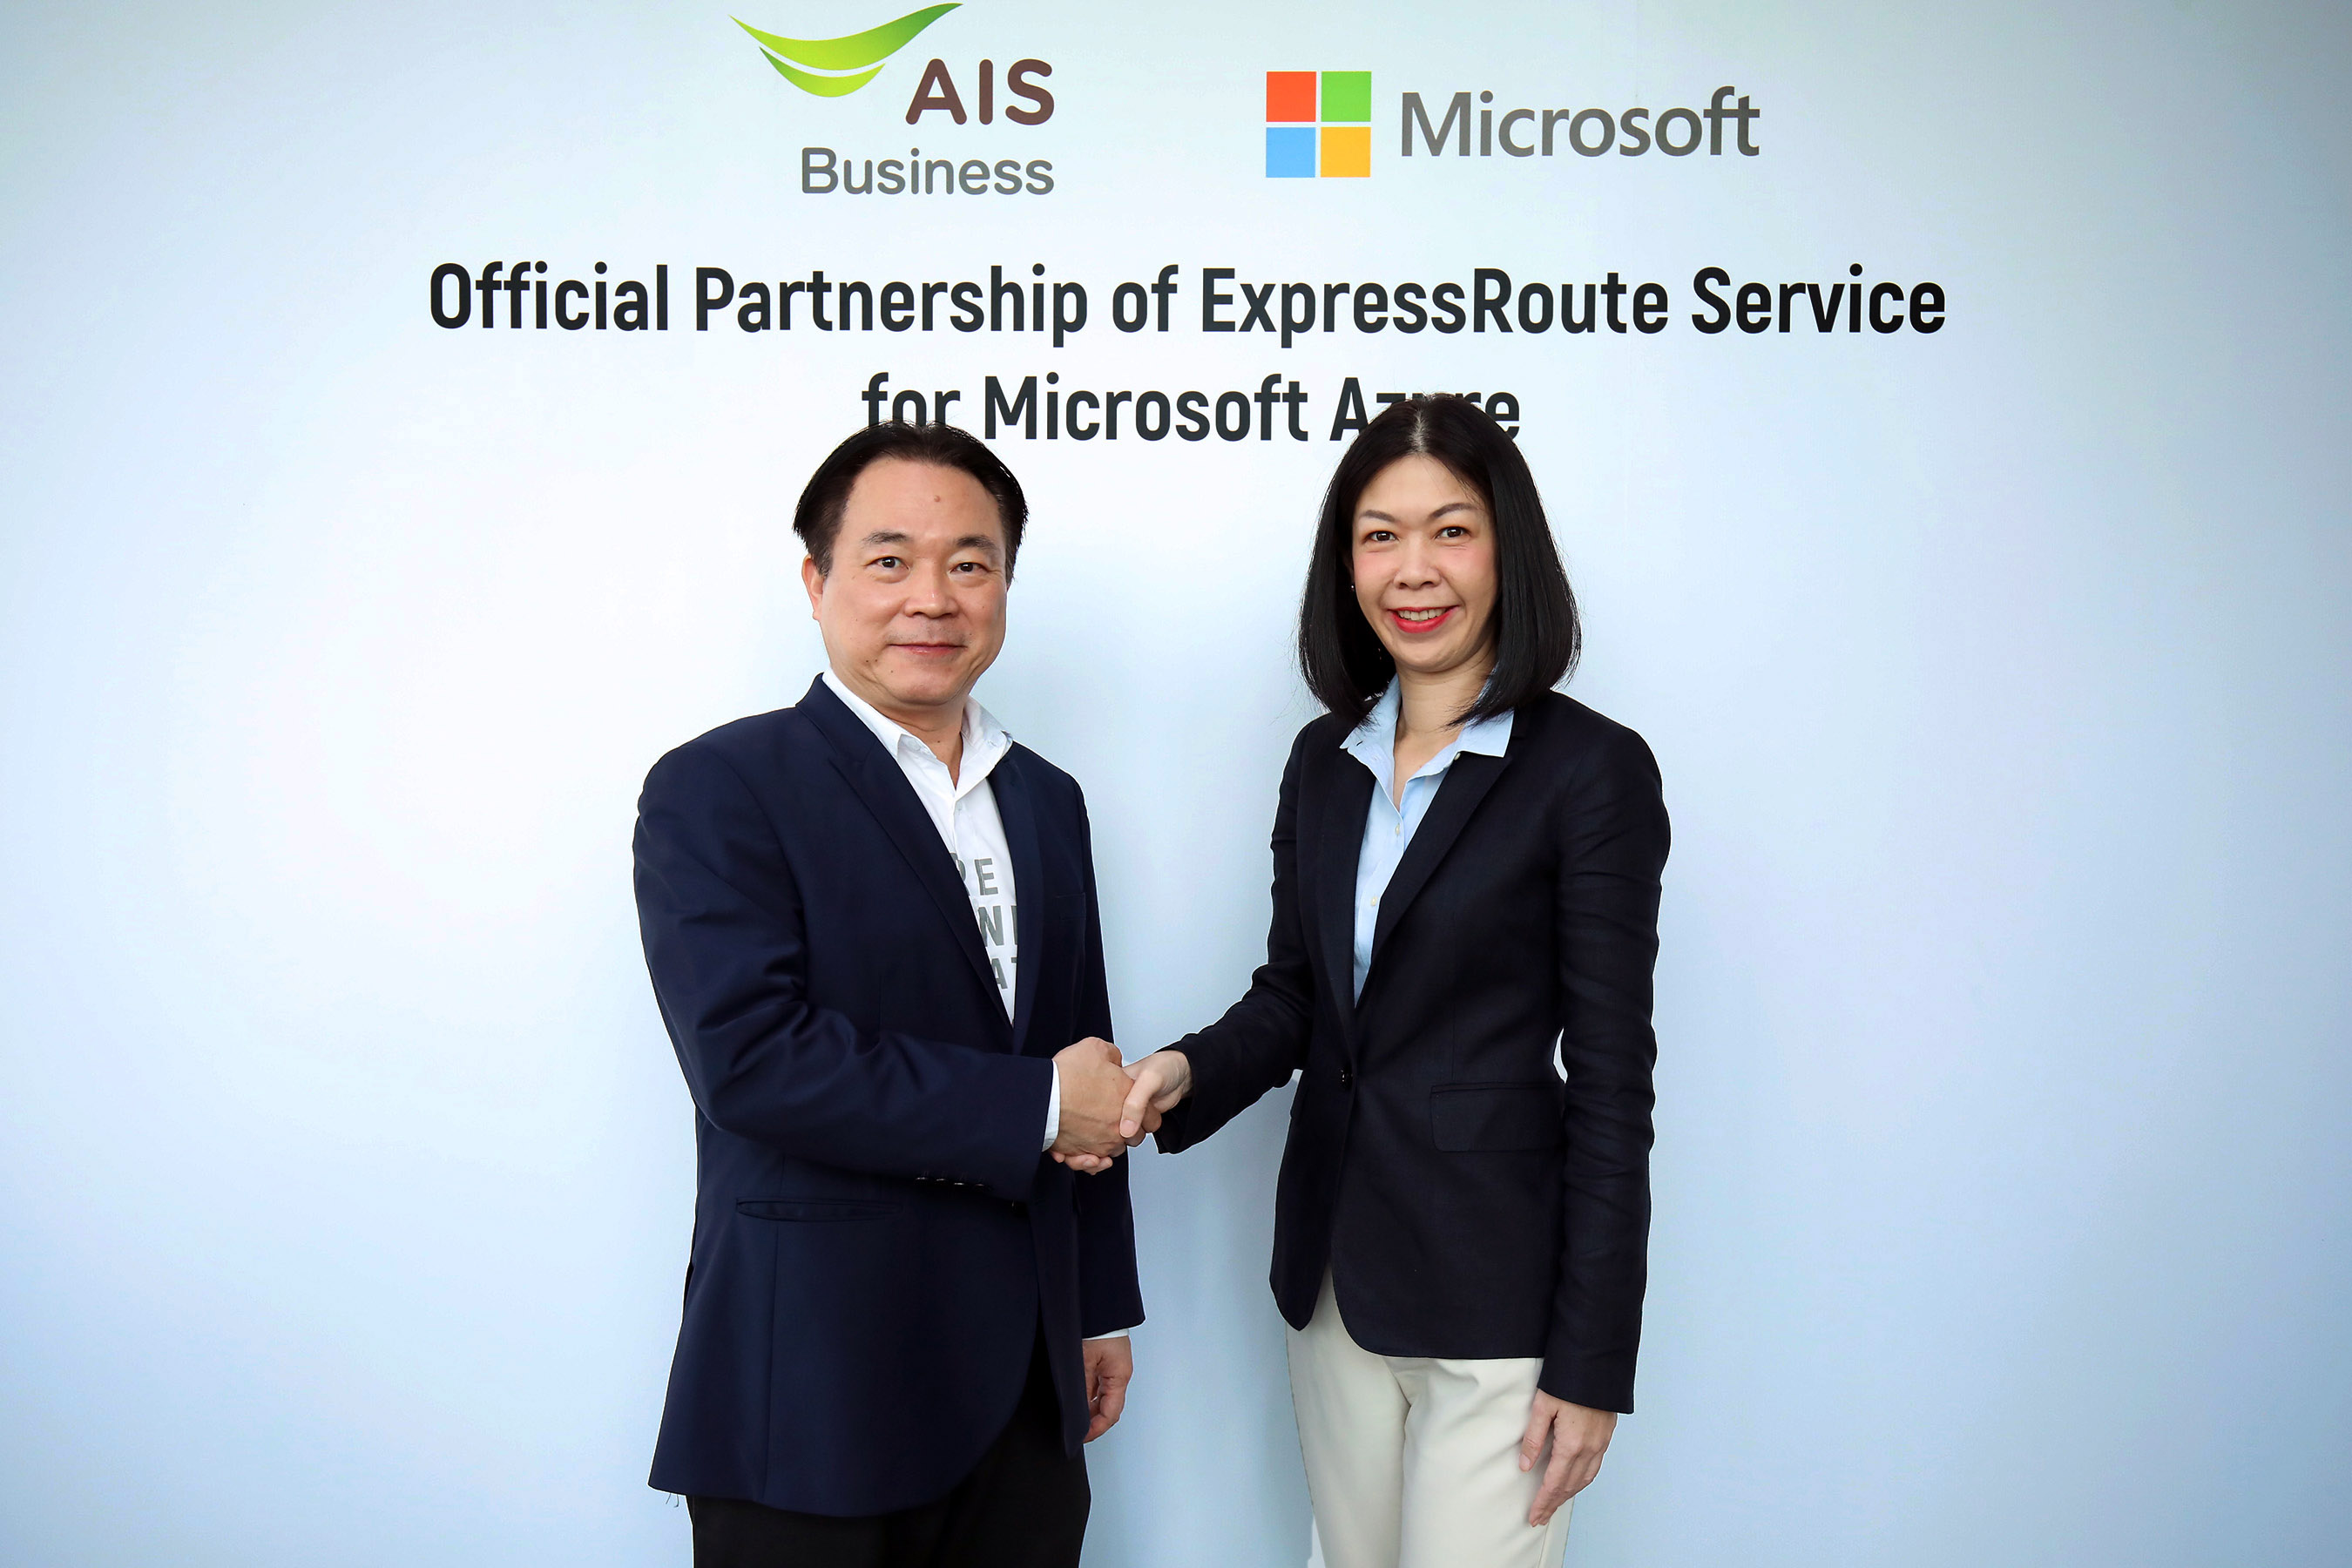 AIS Business ผนึก Microsoft เสริมศักยภาพภาคธุรกิจไทยให้เชื่อมต่อคลาวด์ได้เร็วกว่า เสถียรกว่า ด้วยมาตรฐานระดับโลก